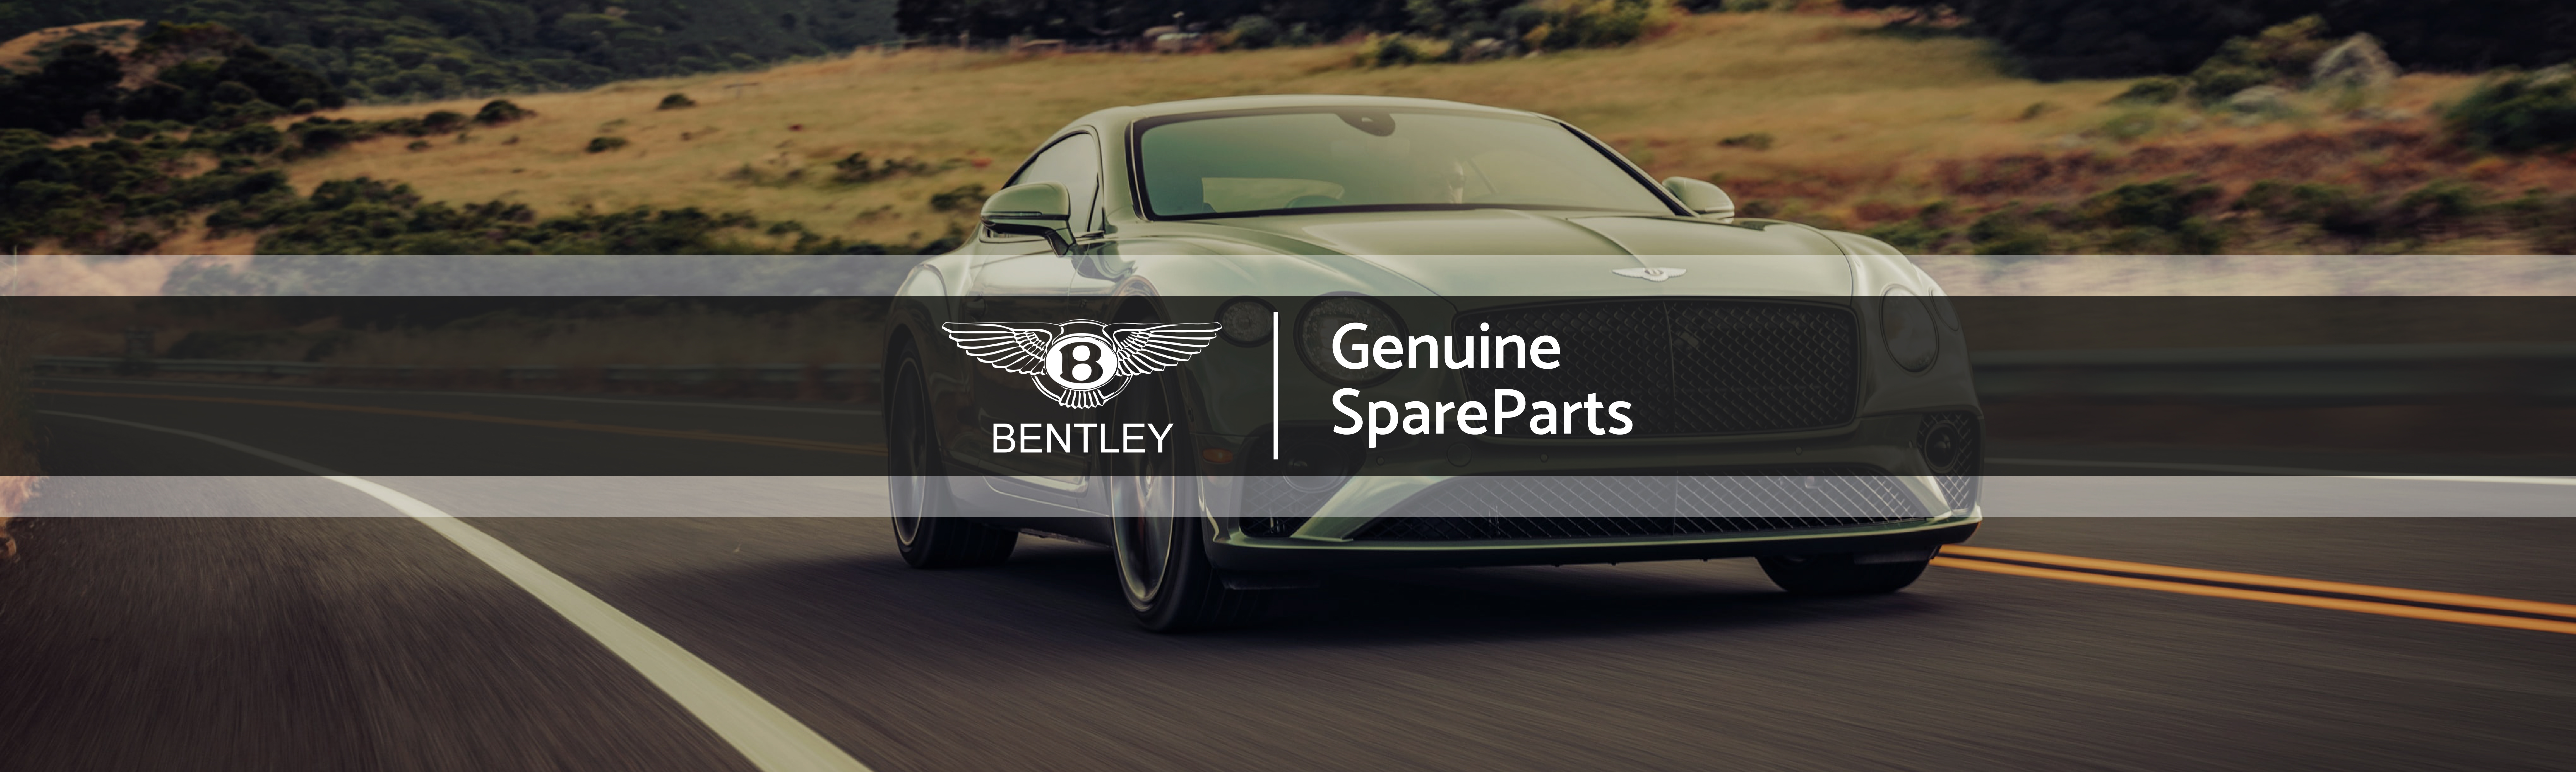 Genuine ‏‏Bentley ‏‏Spare Parts Supplier In Dubai - UAE